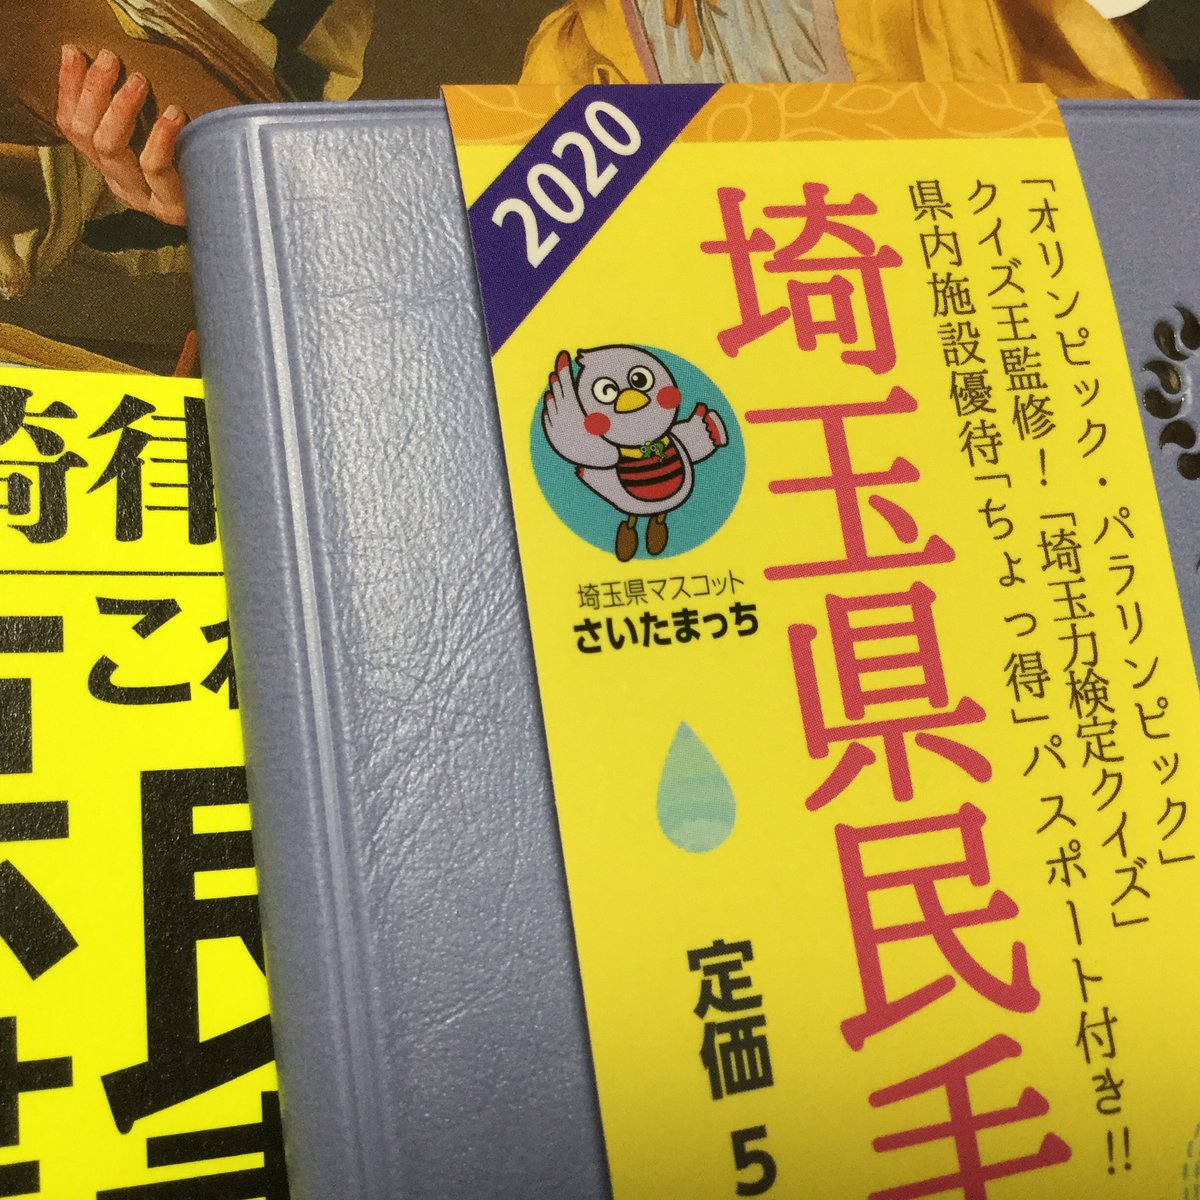 コンビニに埼玉県民手帳あったから買ったんだけど、これよく見たらコバトンじゃないんだ…？ 